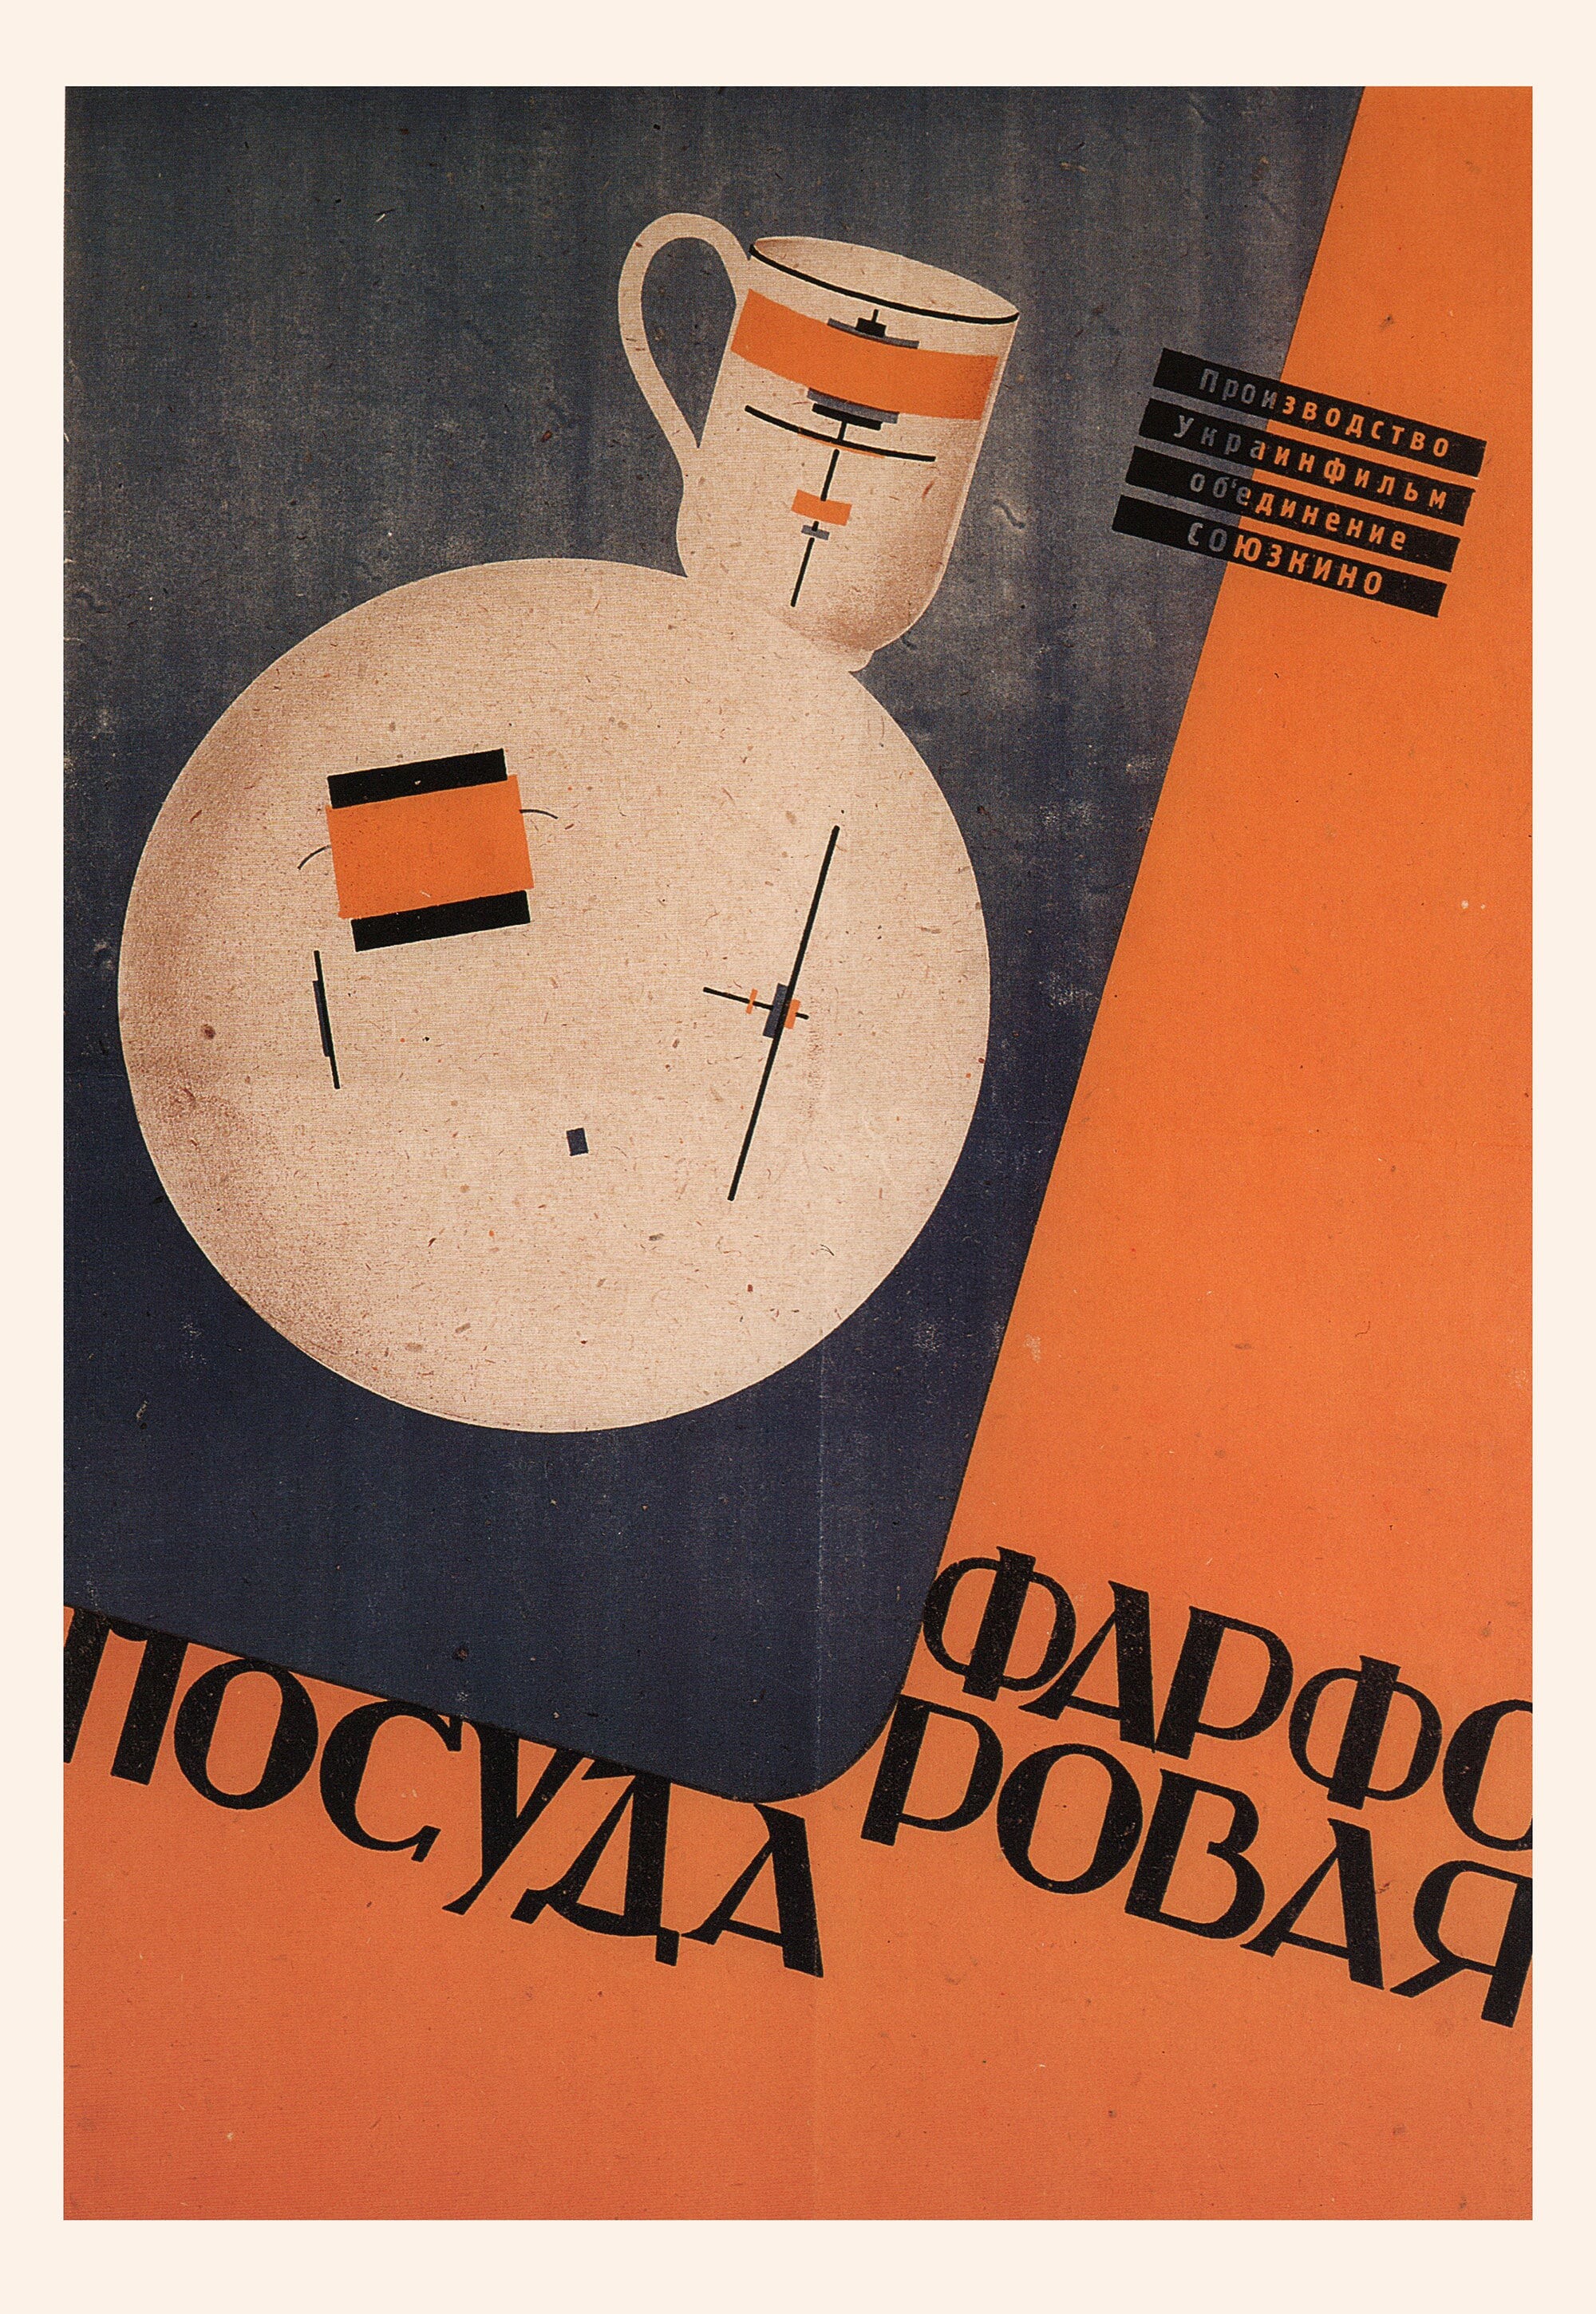 Фарфоровая посуда, плакат, автор А. Колтунович (авангардное советское искусство, 1920-е)